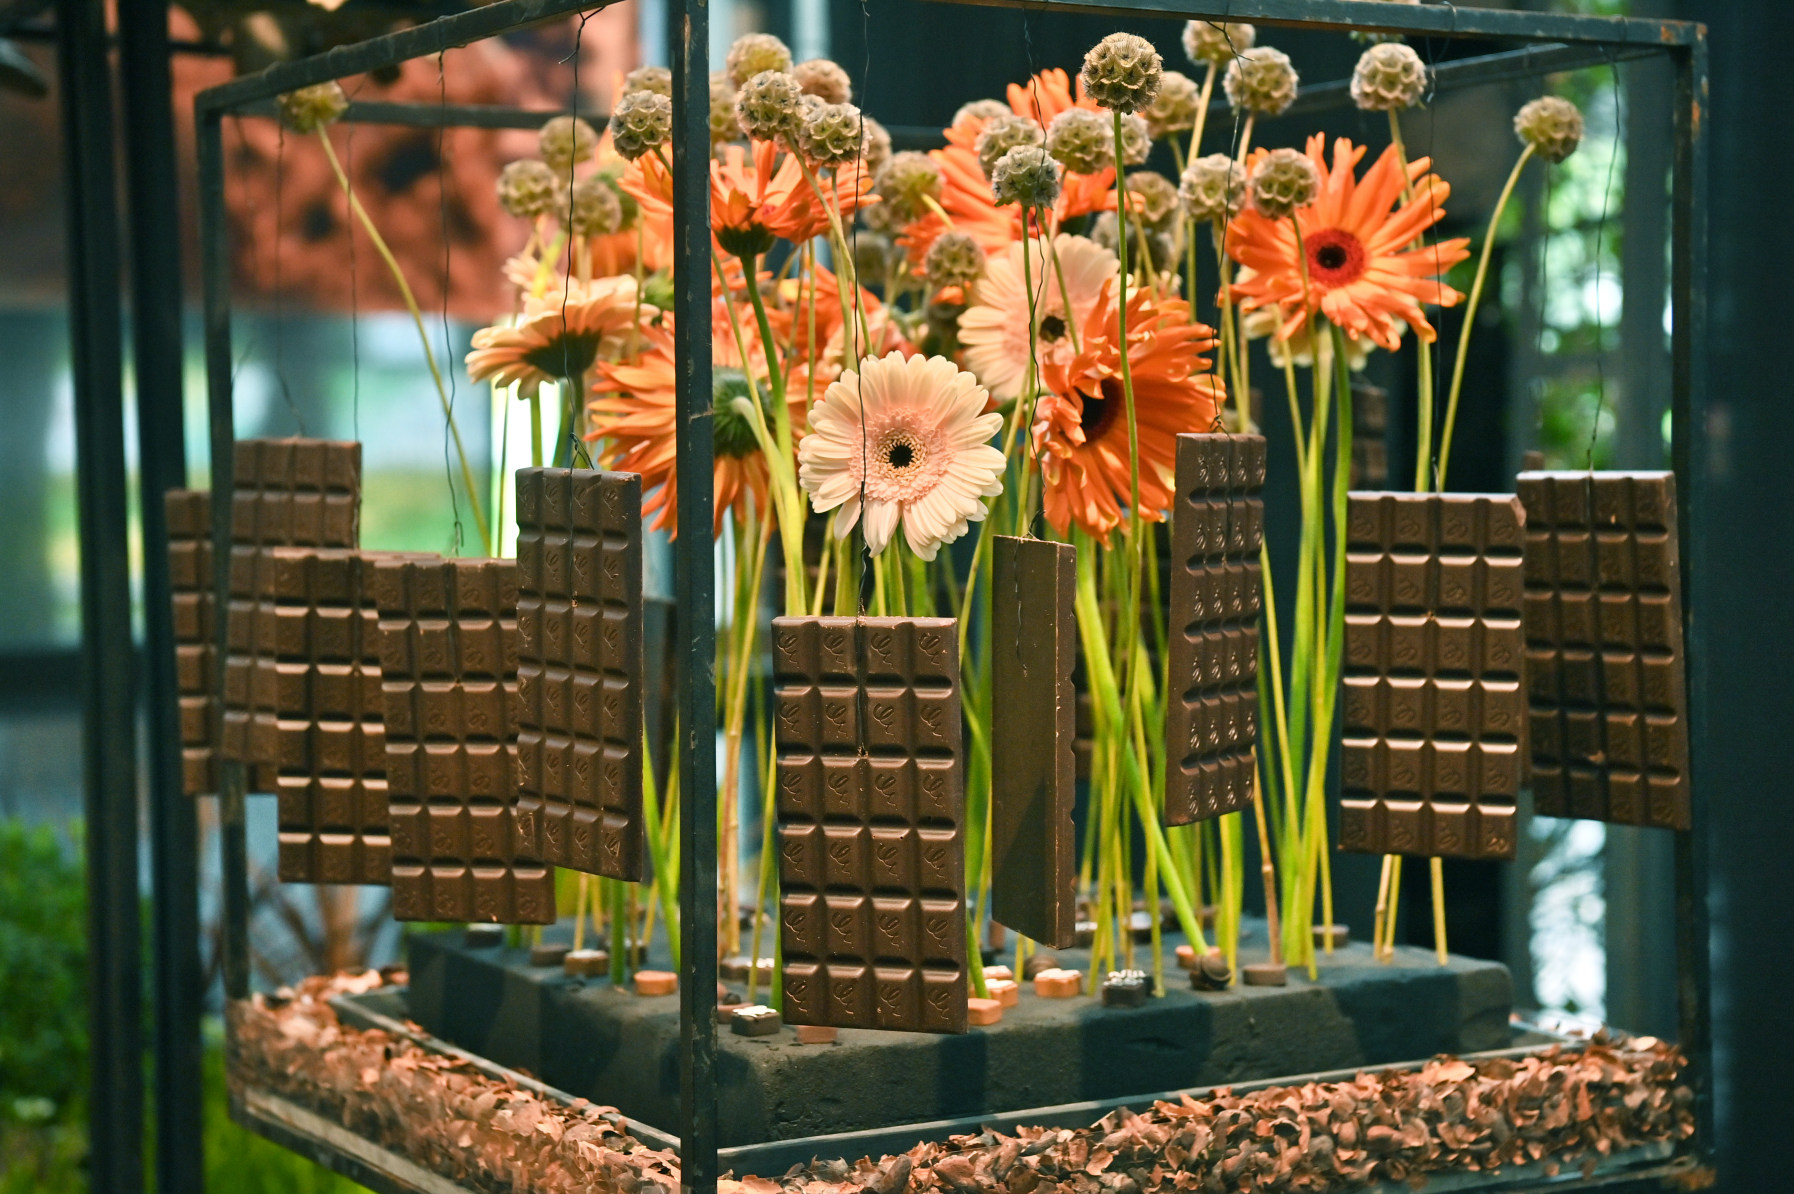 Blumenarrangement mit Schokoladentafeln, Kakaobohnen und orangenen Gerbera